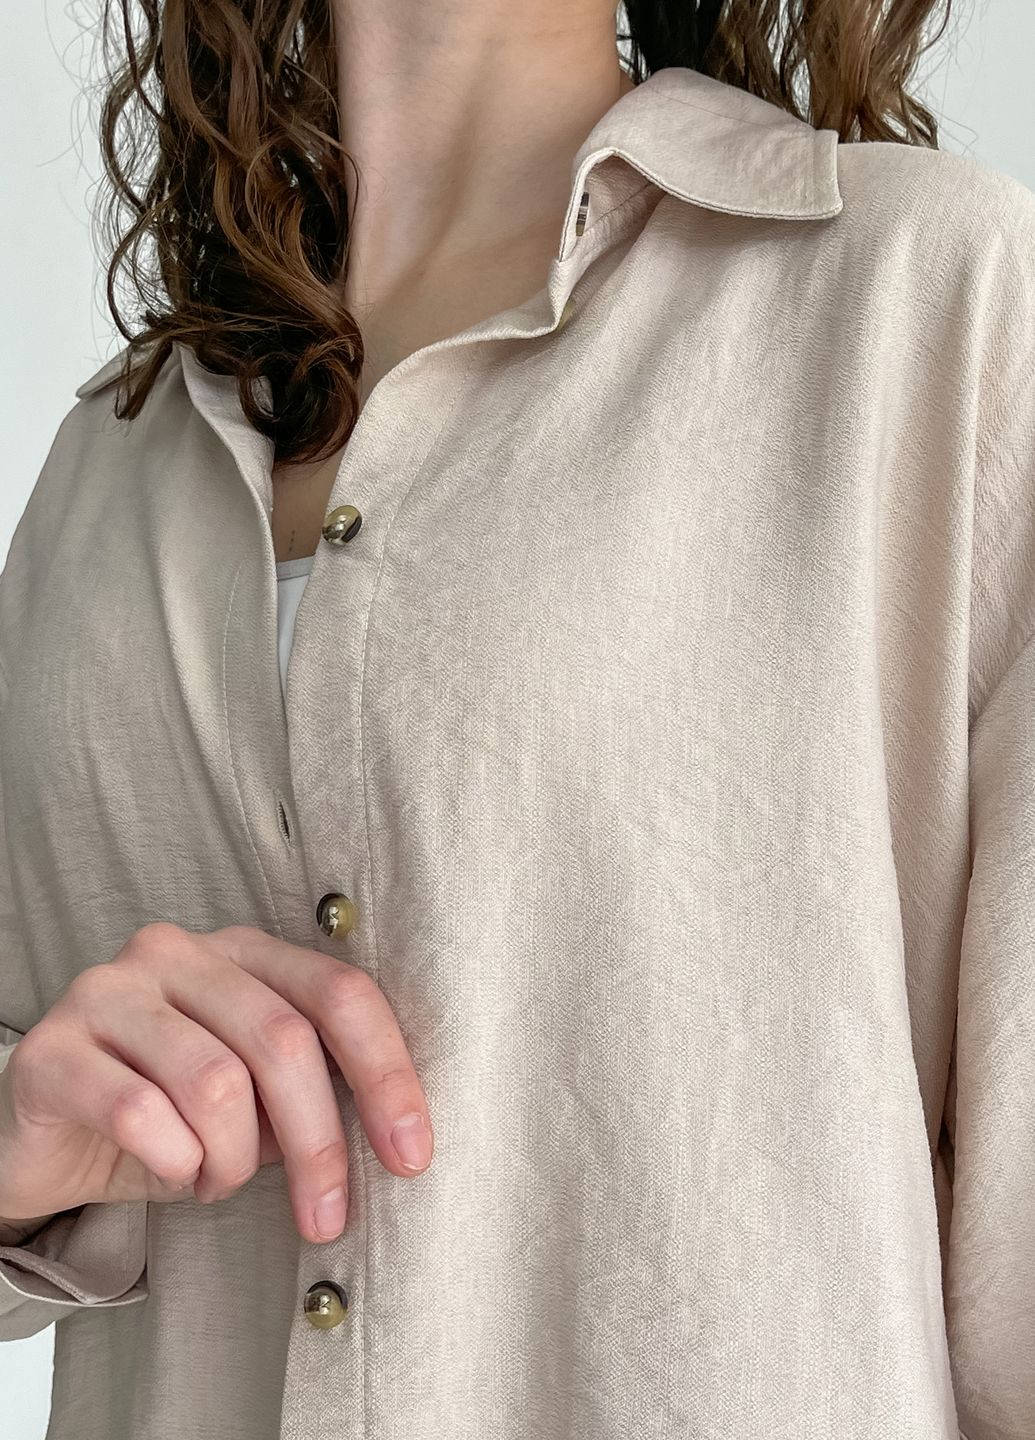 Купить Рубашка женская с длинным рукавом бежевого цвета из льна Merlini Беллуно 200000243, размер 46-48 в интернет-магазине